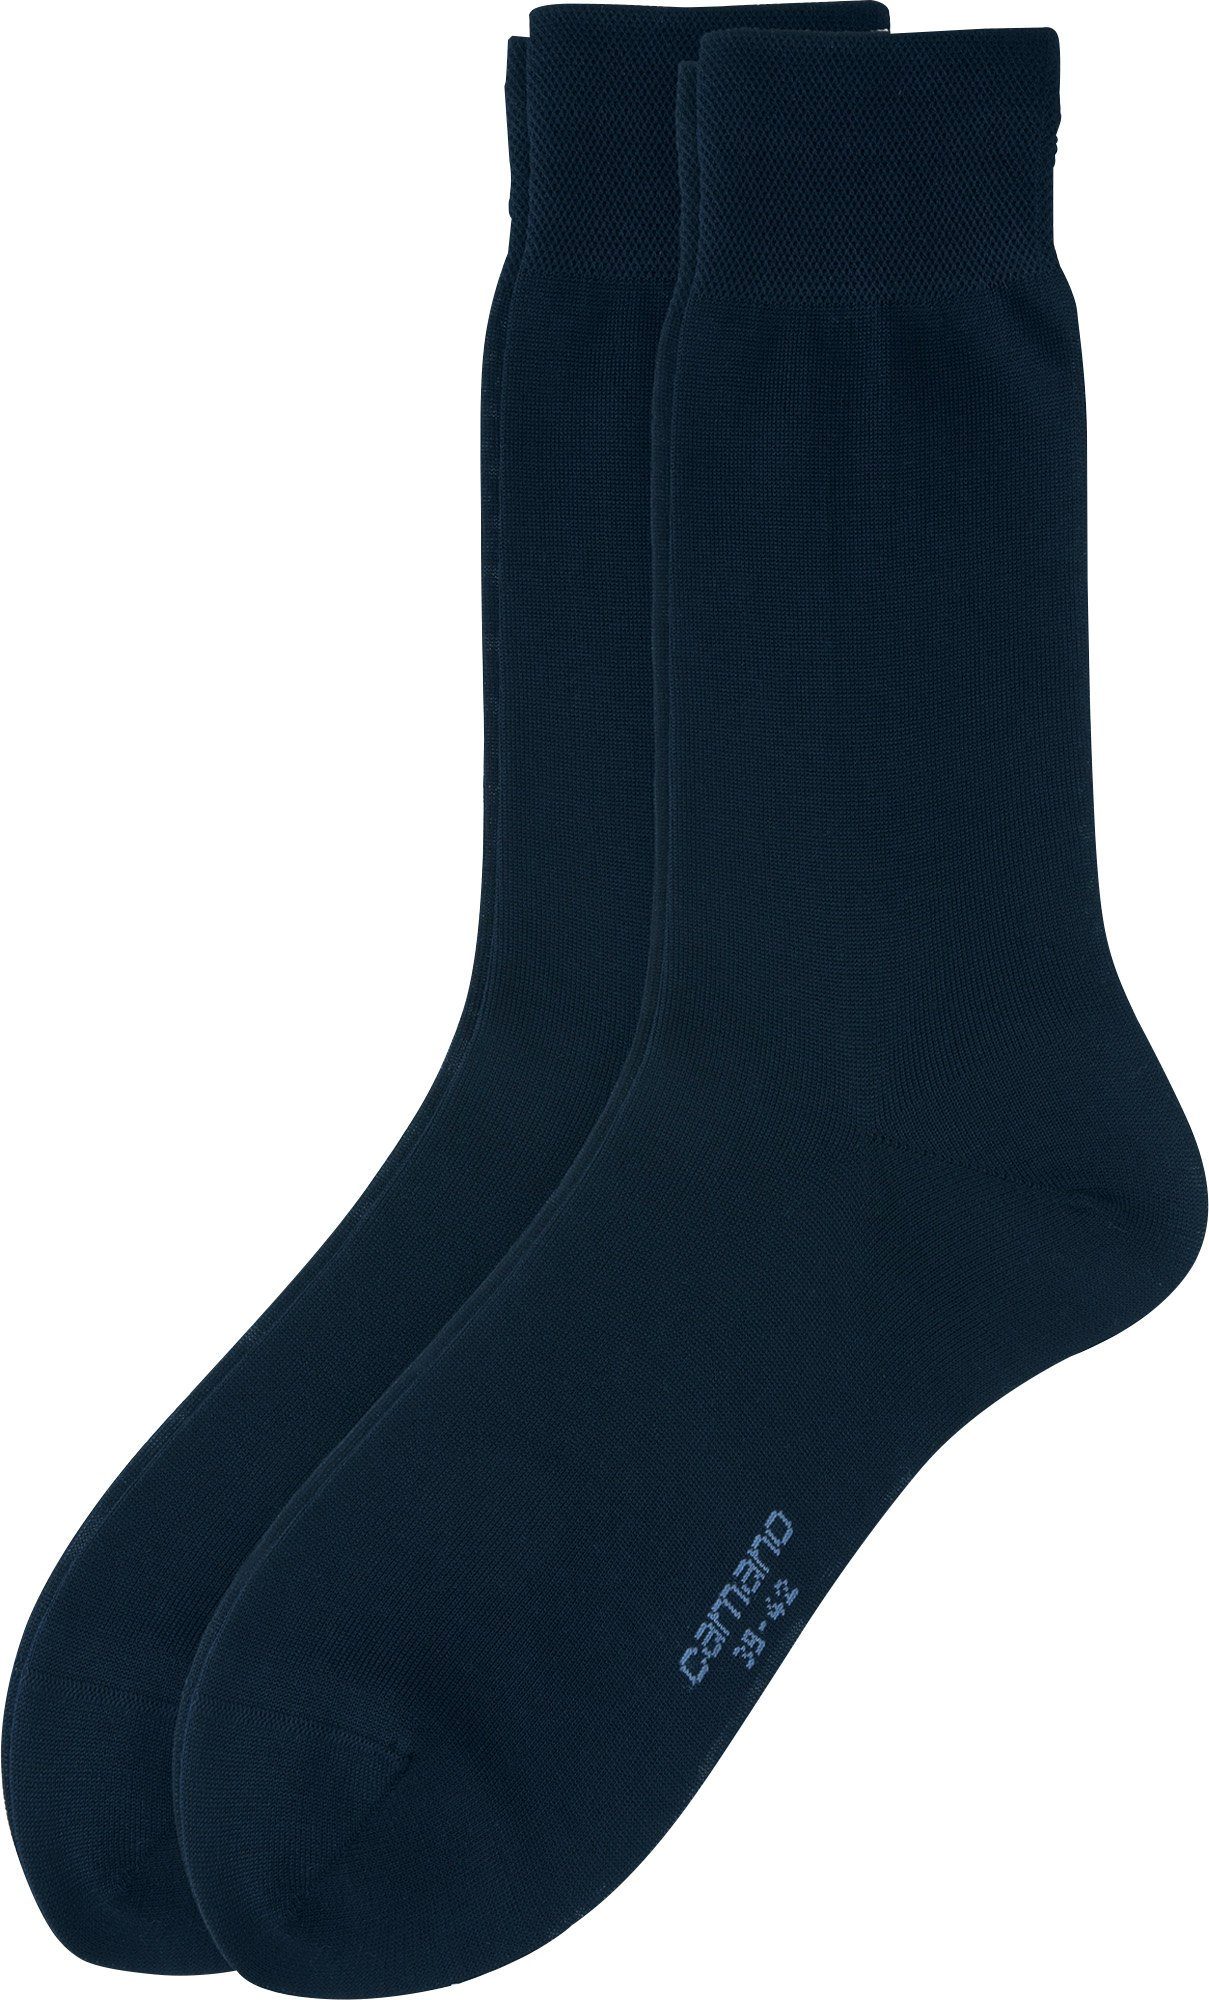 Paar Socken Camano 2 Business-Socken Herren Uni dunkelblau